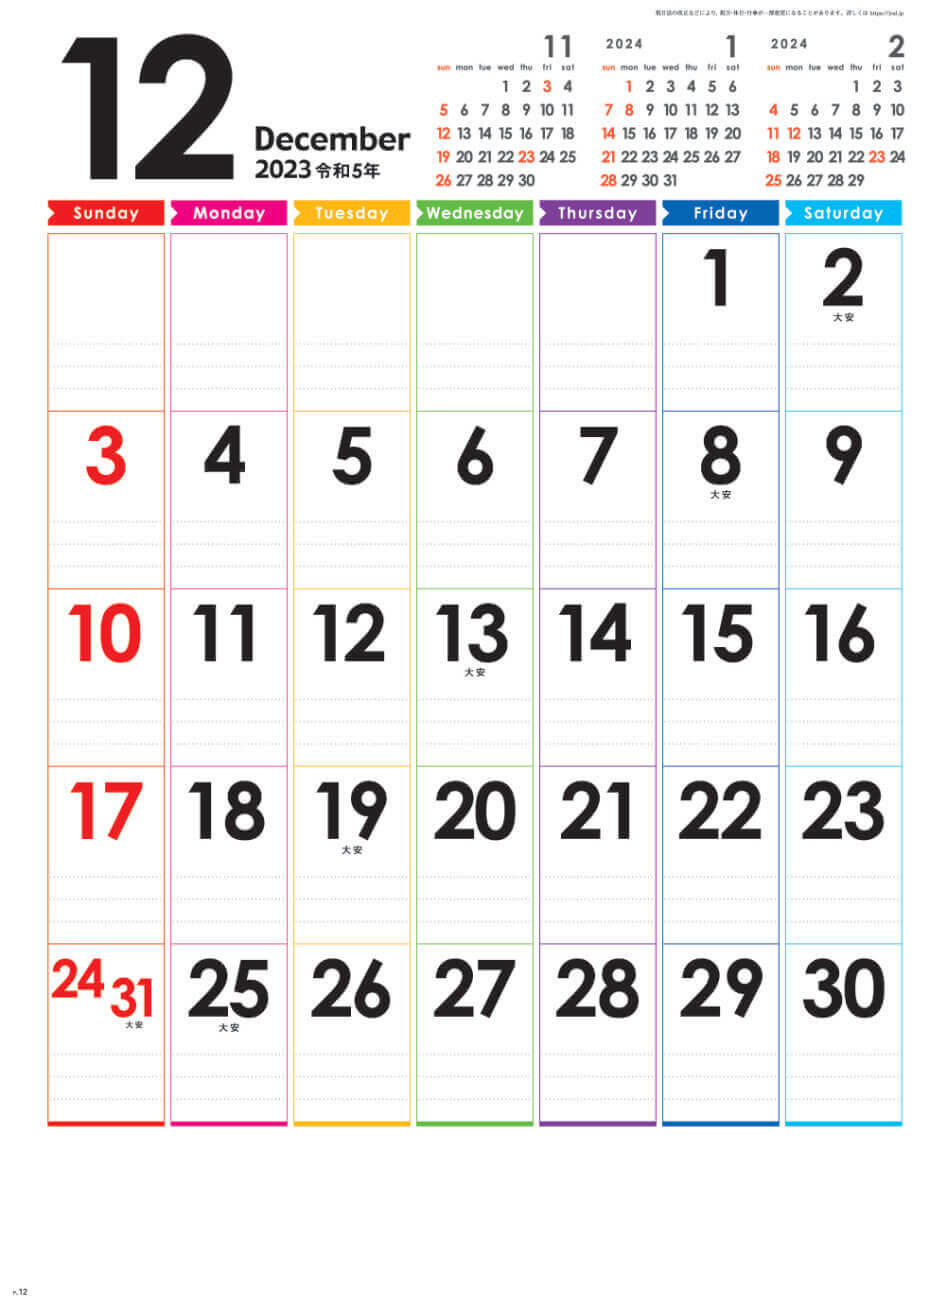  レインボーカレンダー 2023年カレンダーの画像